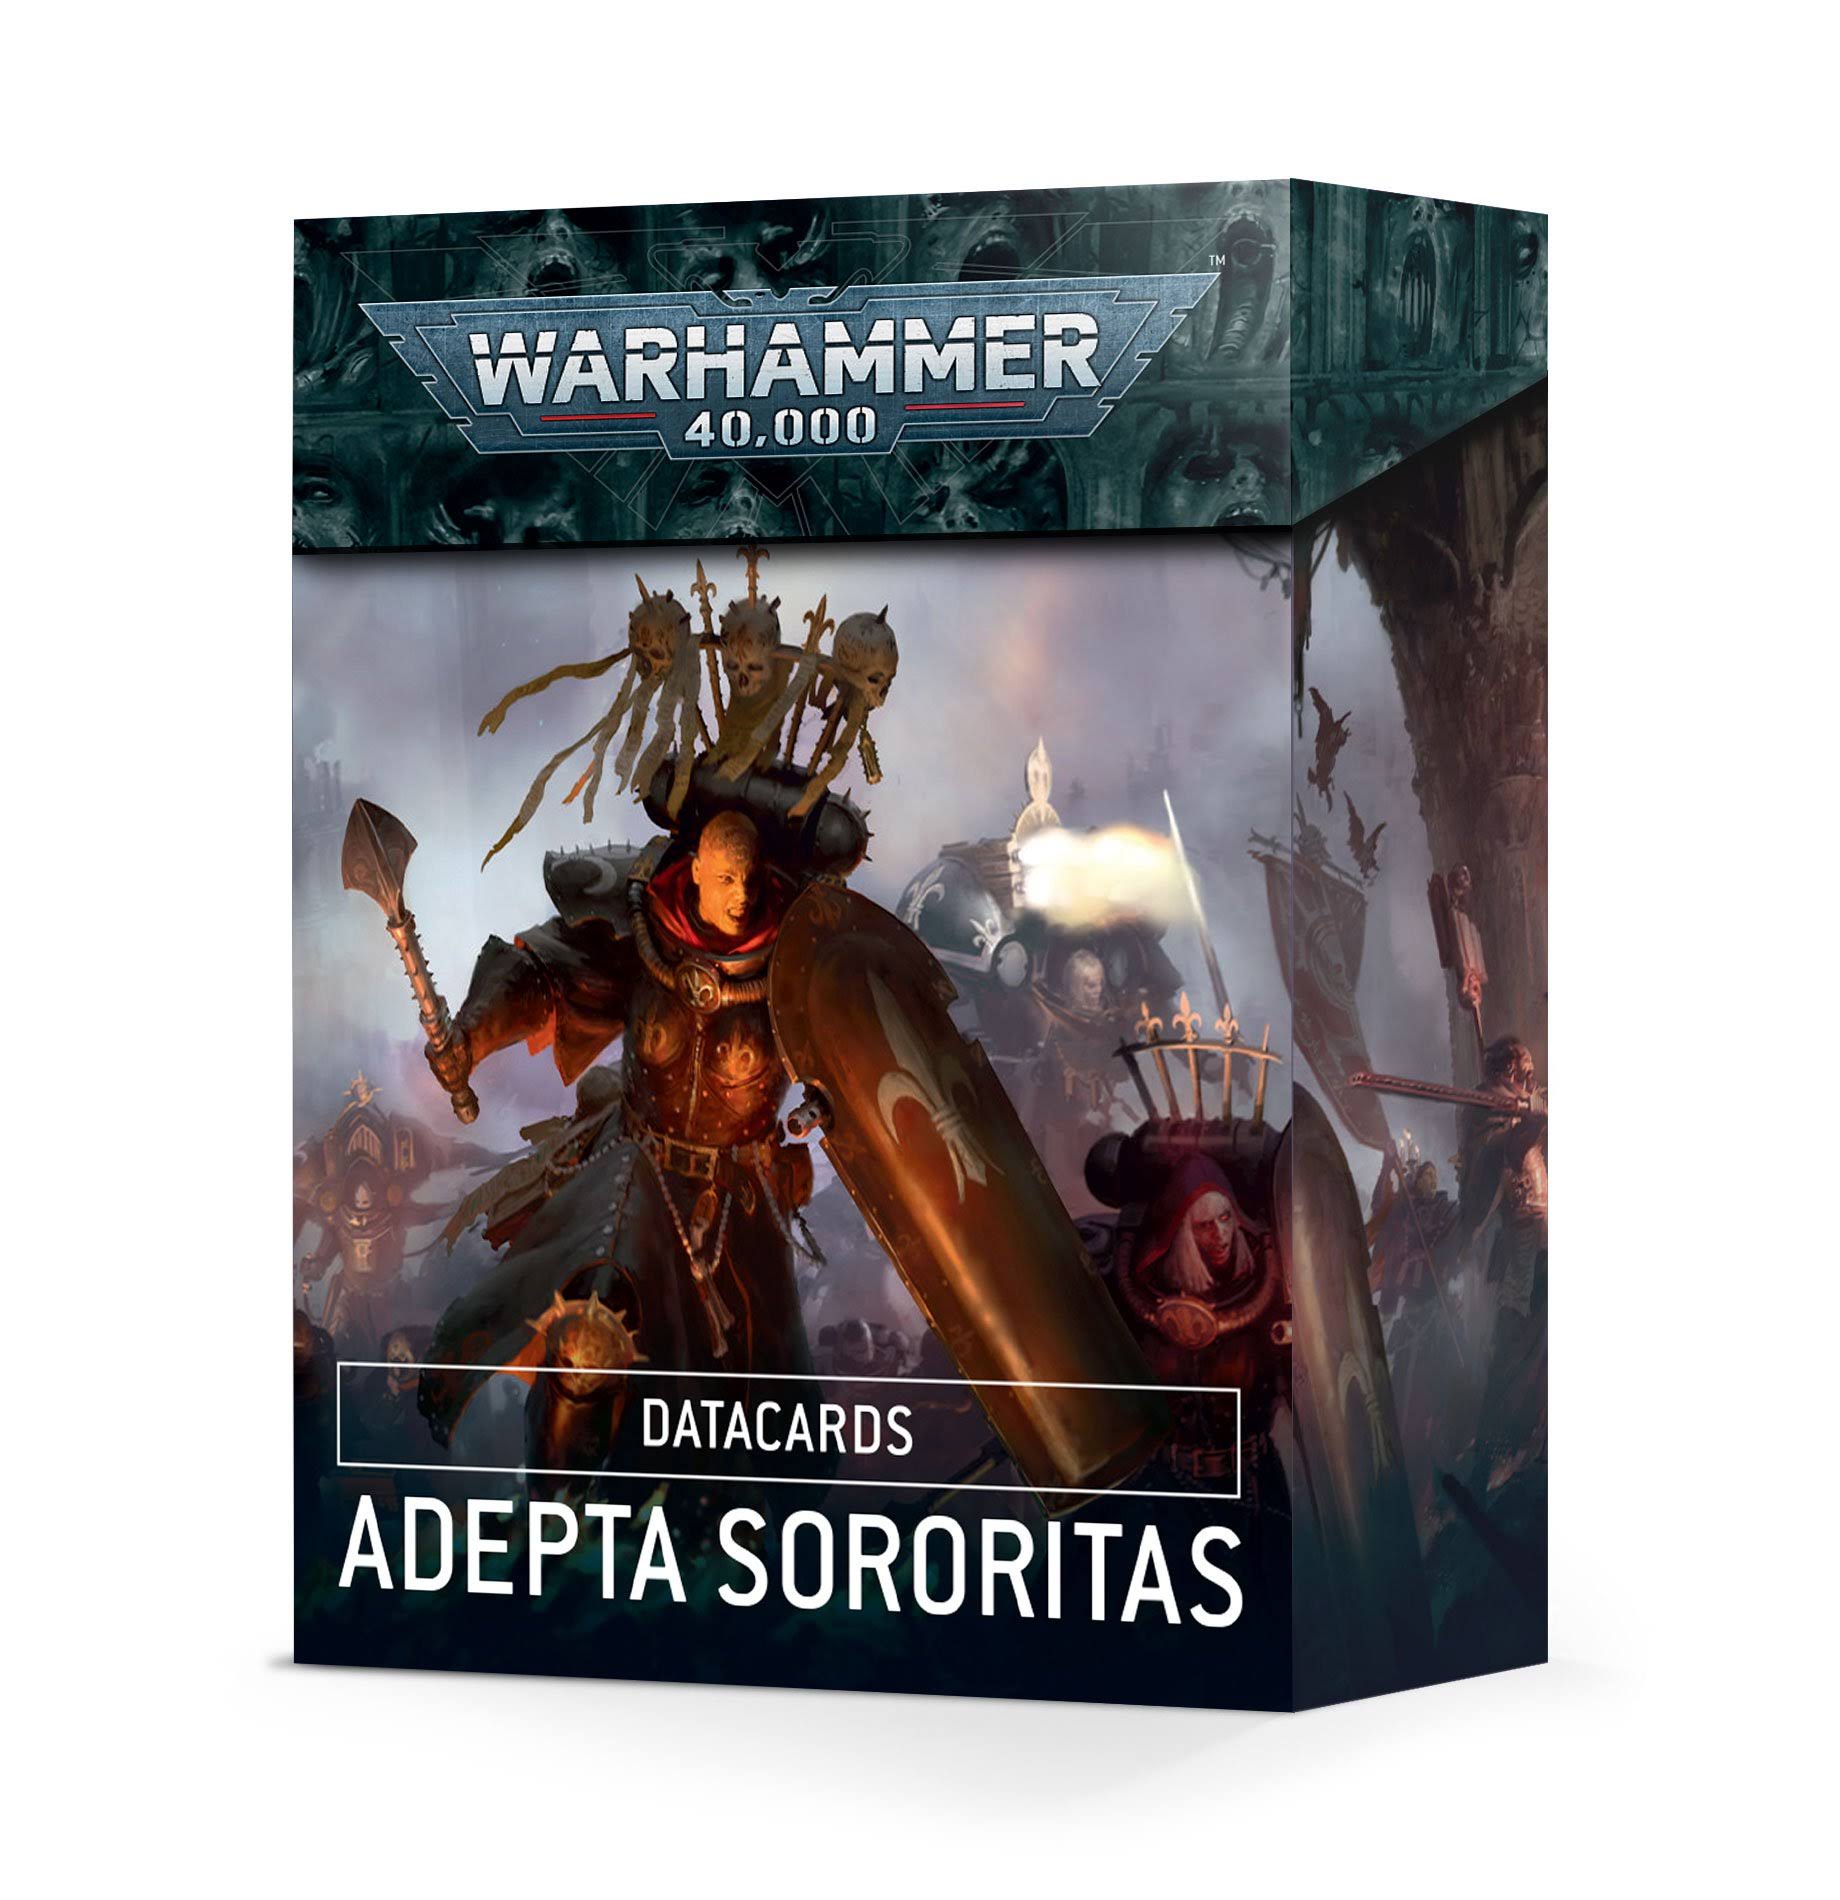 Warhammer 40,000 - Datacards: Adepta Sororitas